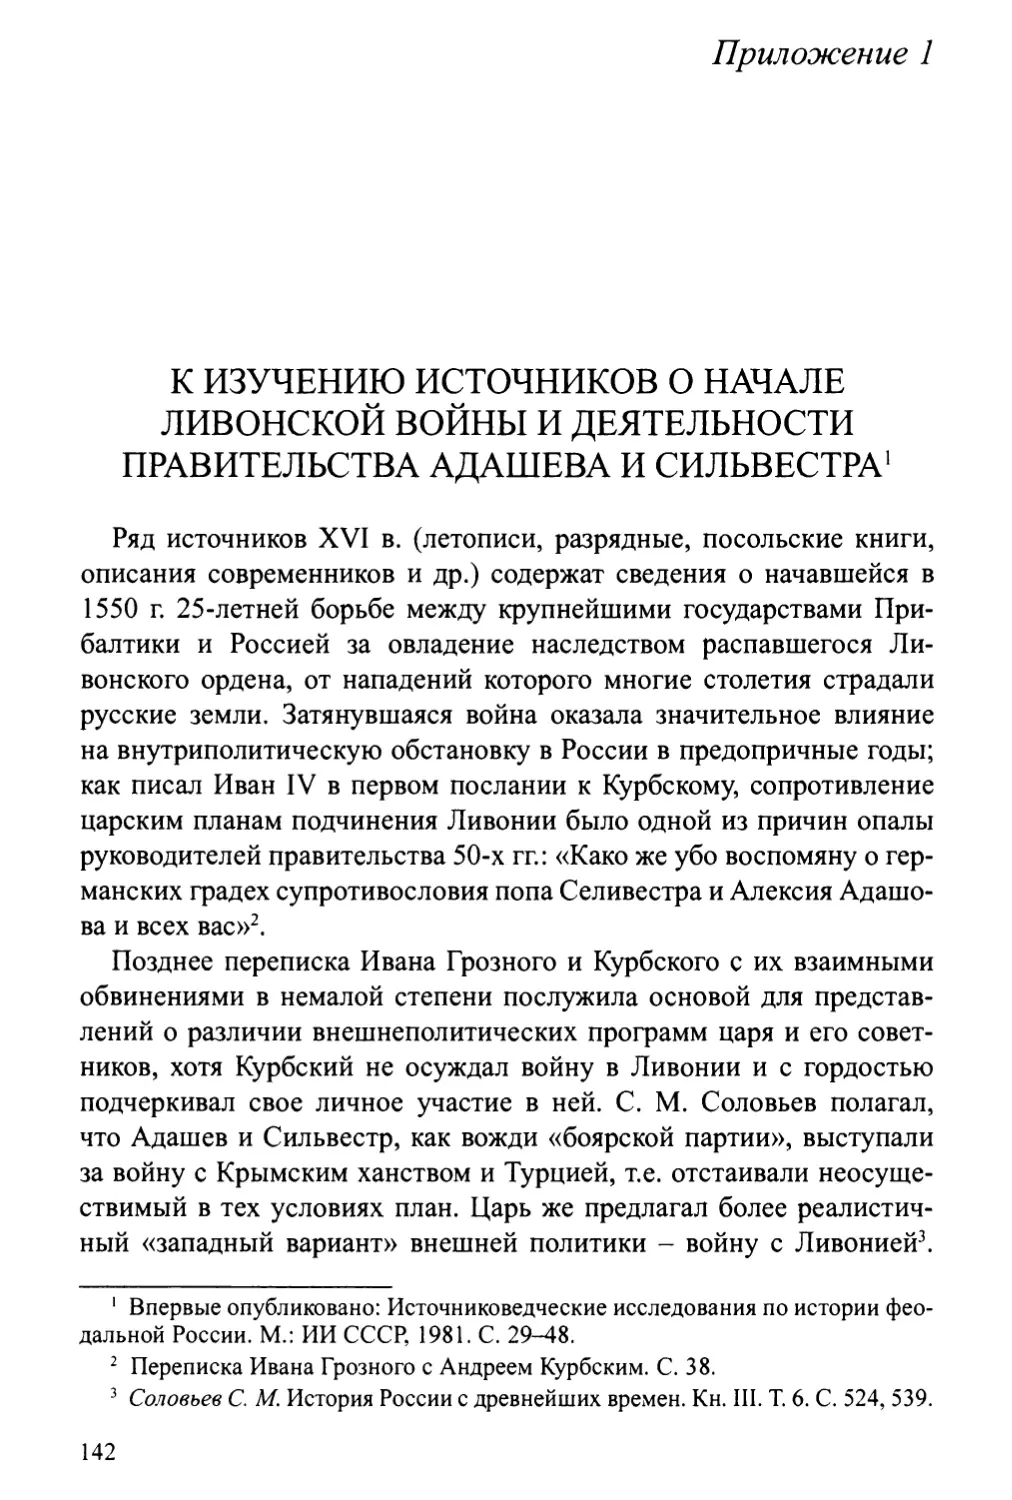 Приложение 1. К изучению источников о начале Ливонской войны и деятельности правительства Адашева и Сильвестра